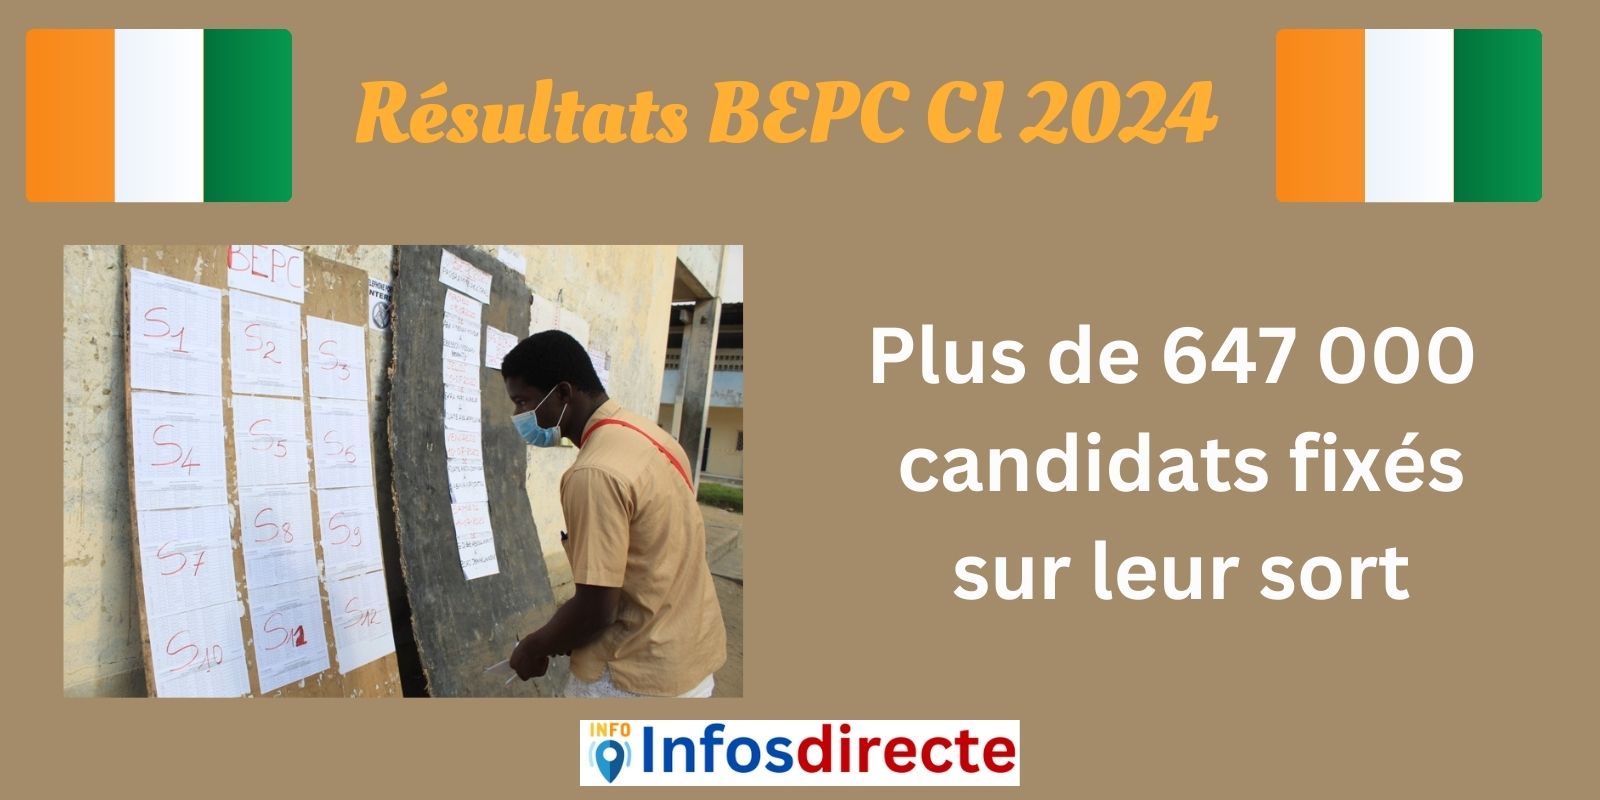 Plus de 647 000 candidats fixés sur leur sort pour les résultats du BEPC CI 2024 en Côte d'Ivoire